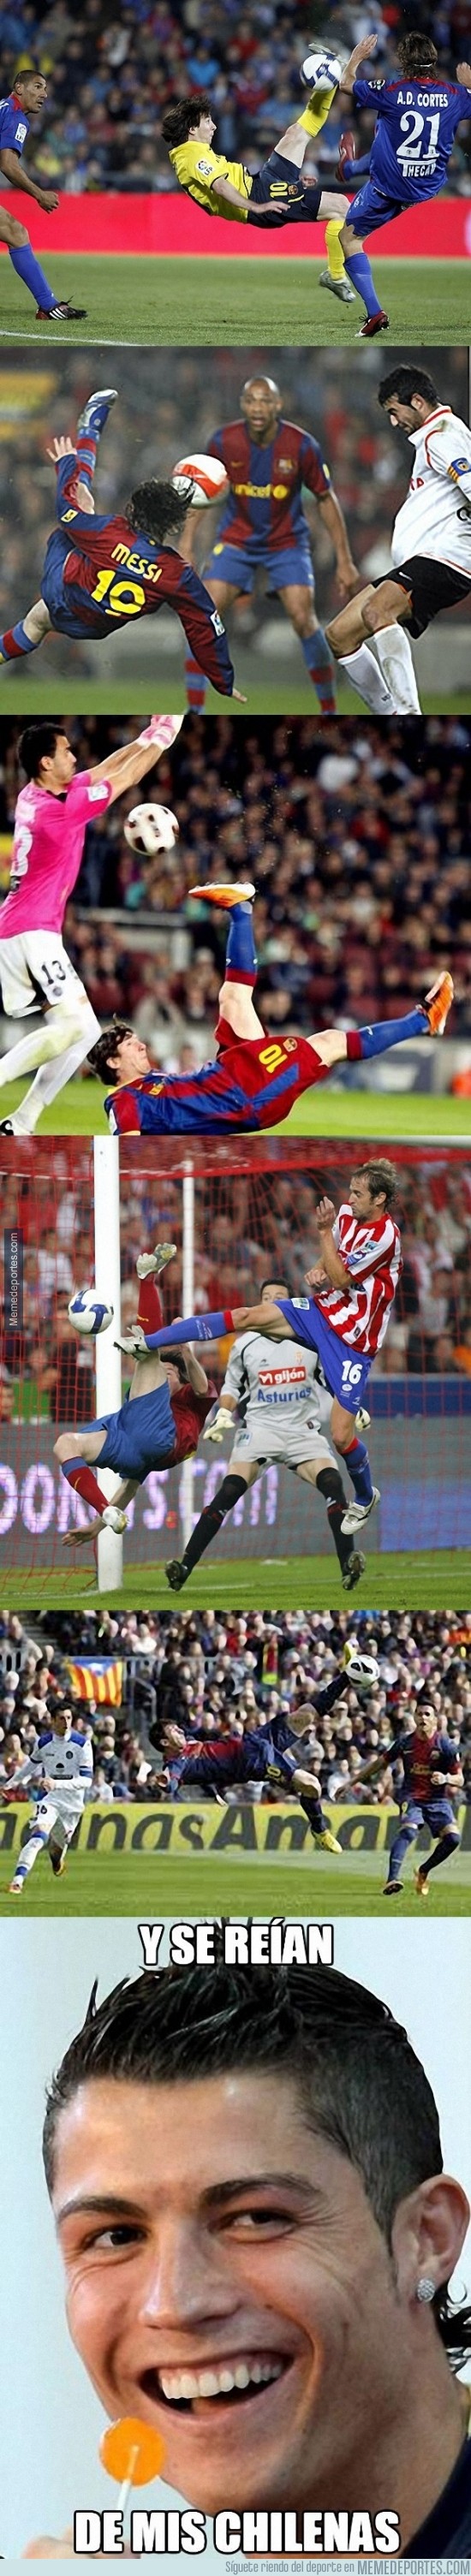 254436 - Messi tampoco es un experto en chilenas